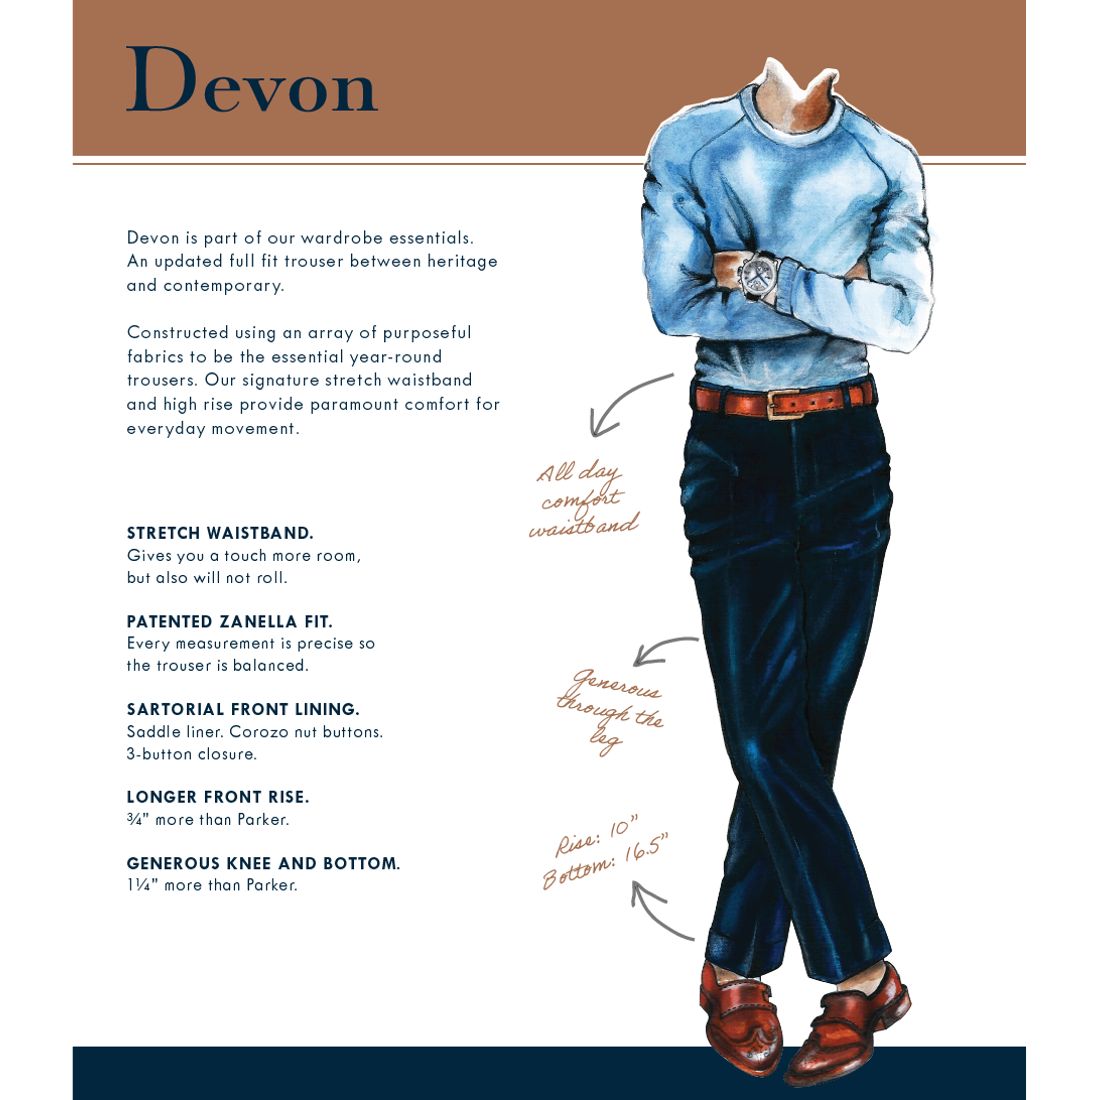 Devon Flat Front Stretch Wool Trouser in Dark Beige (Modern Full Fit) by Zanella